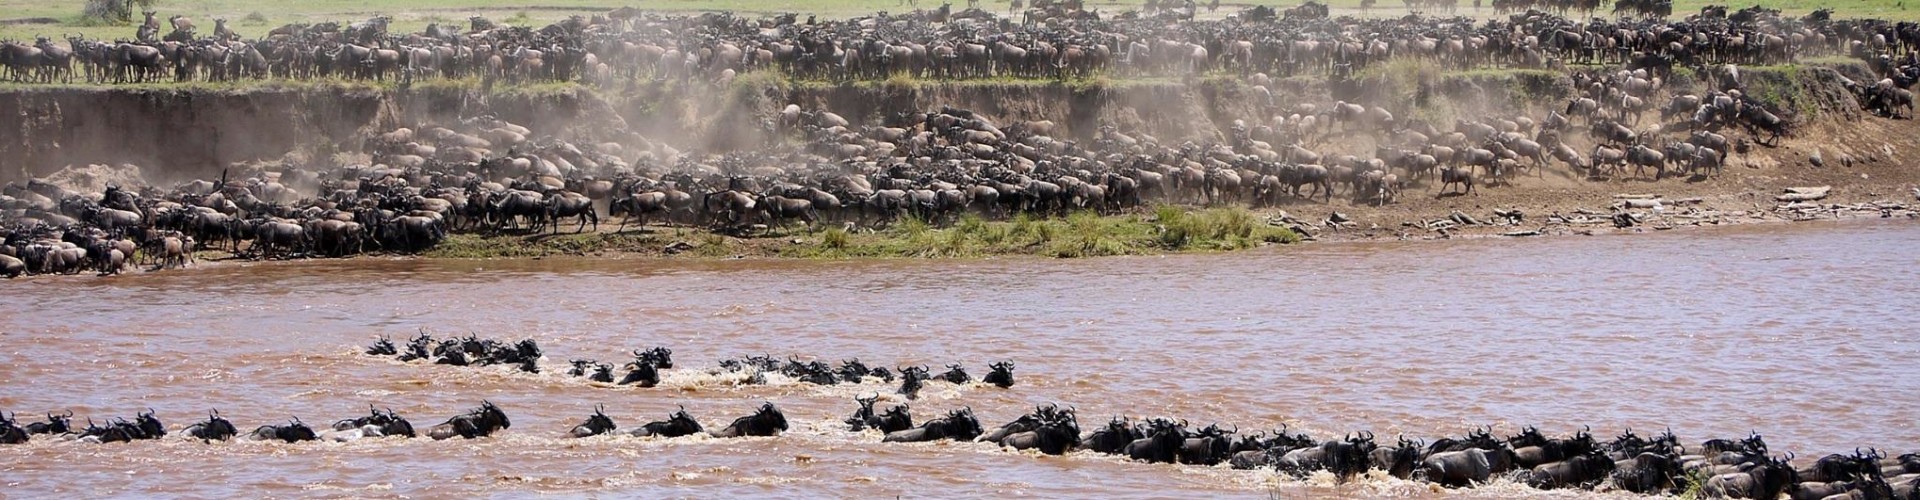 Tanzania Migratie Serengeti Migratie